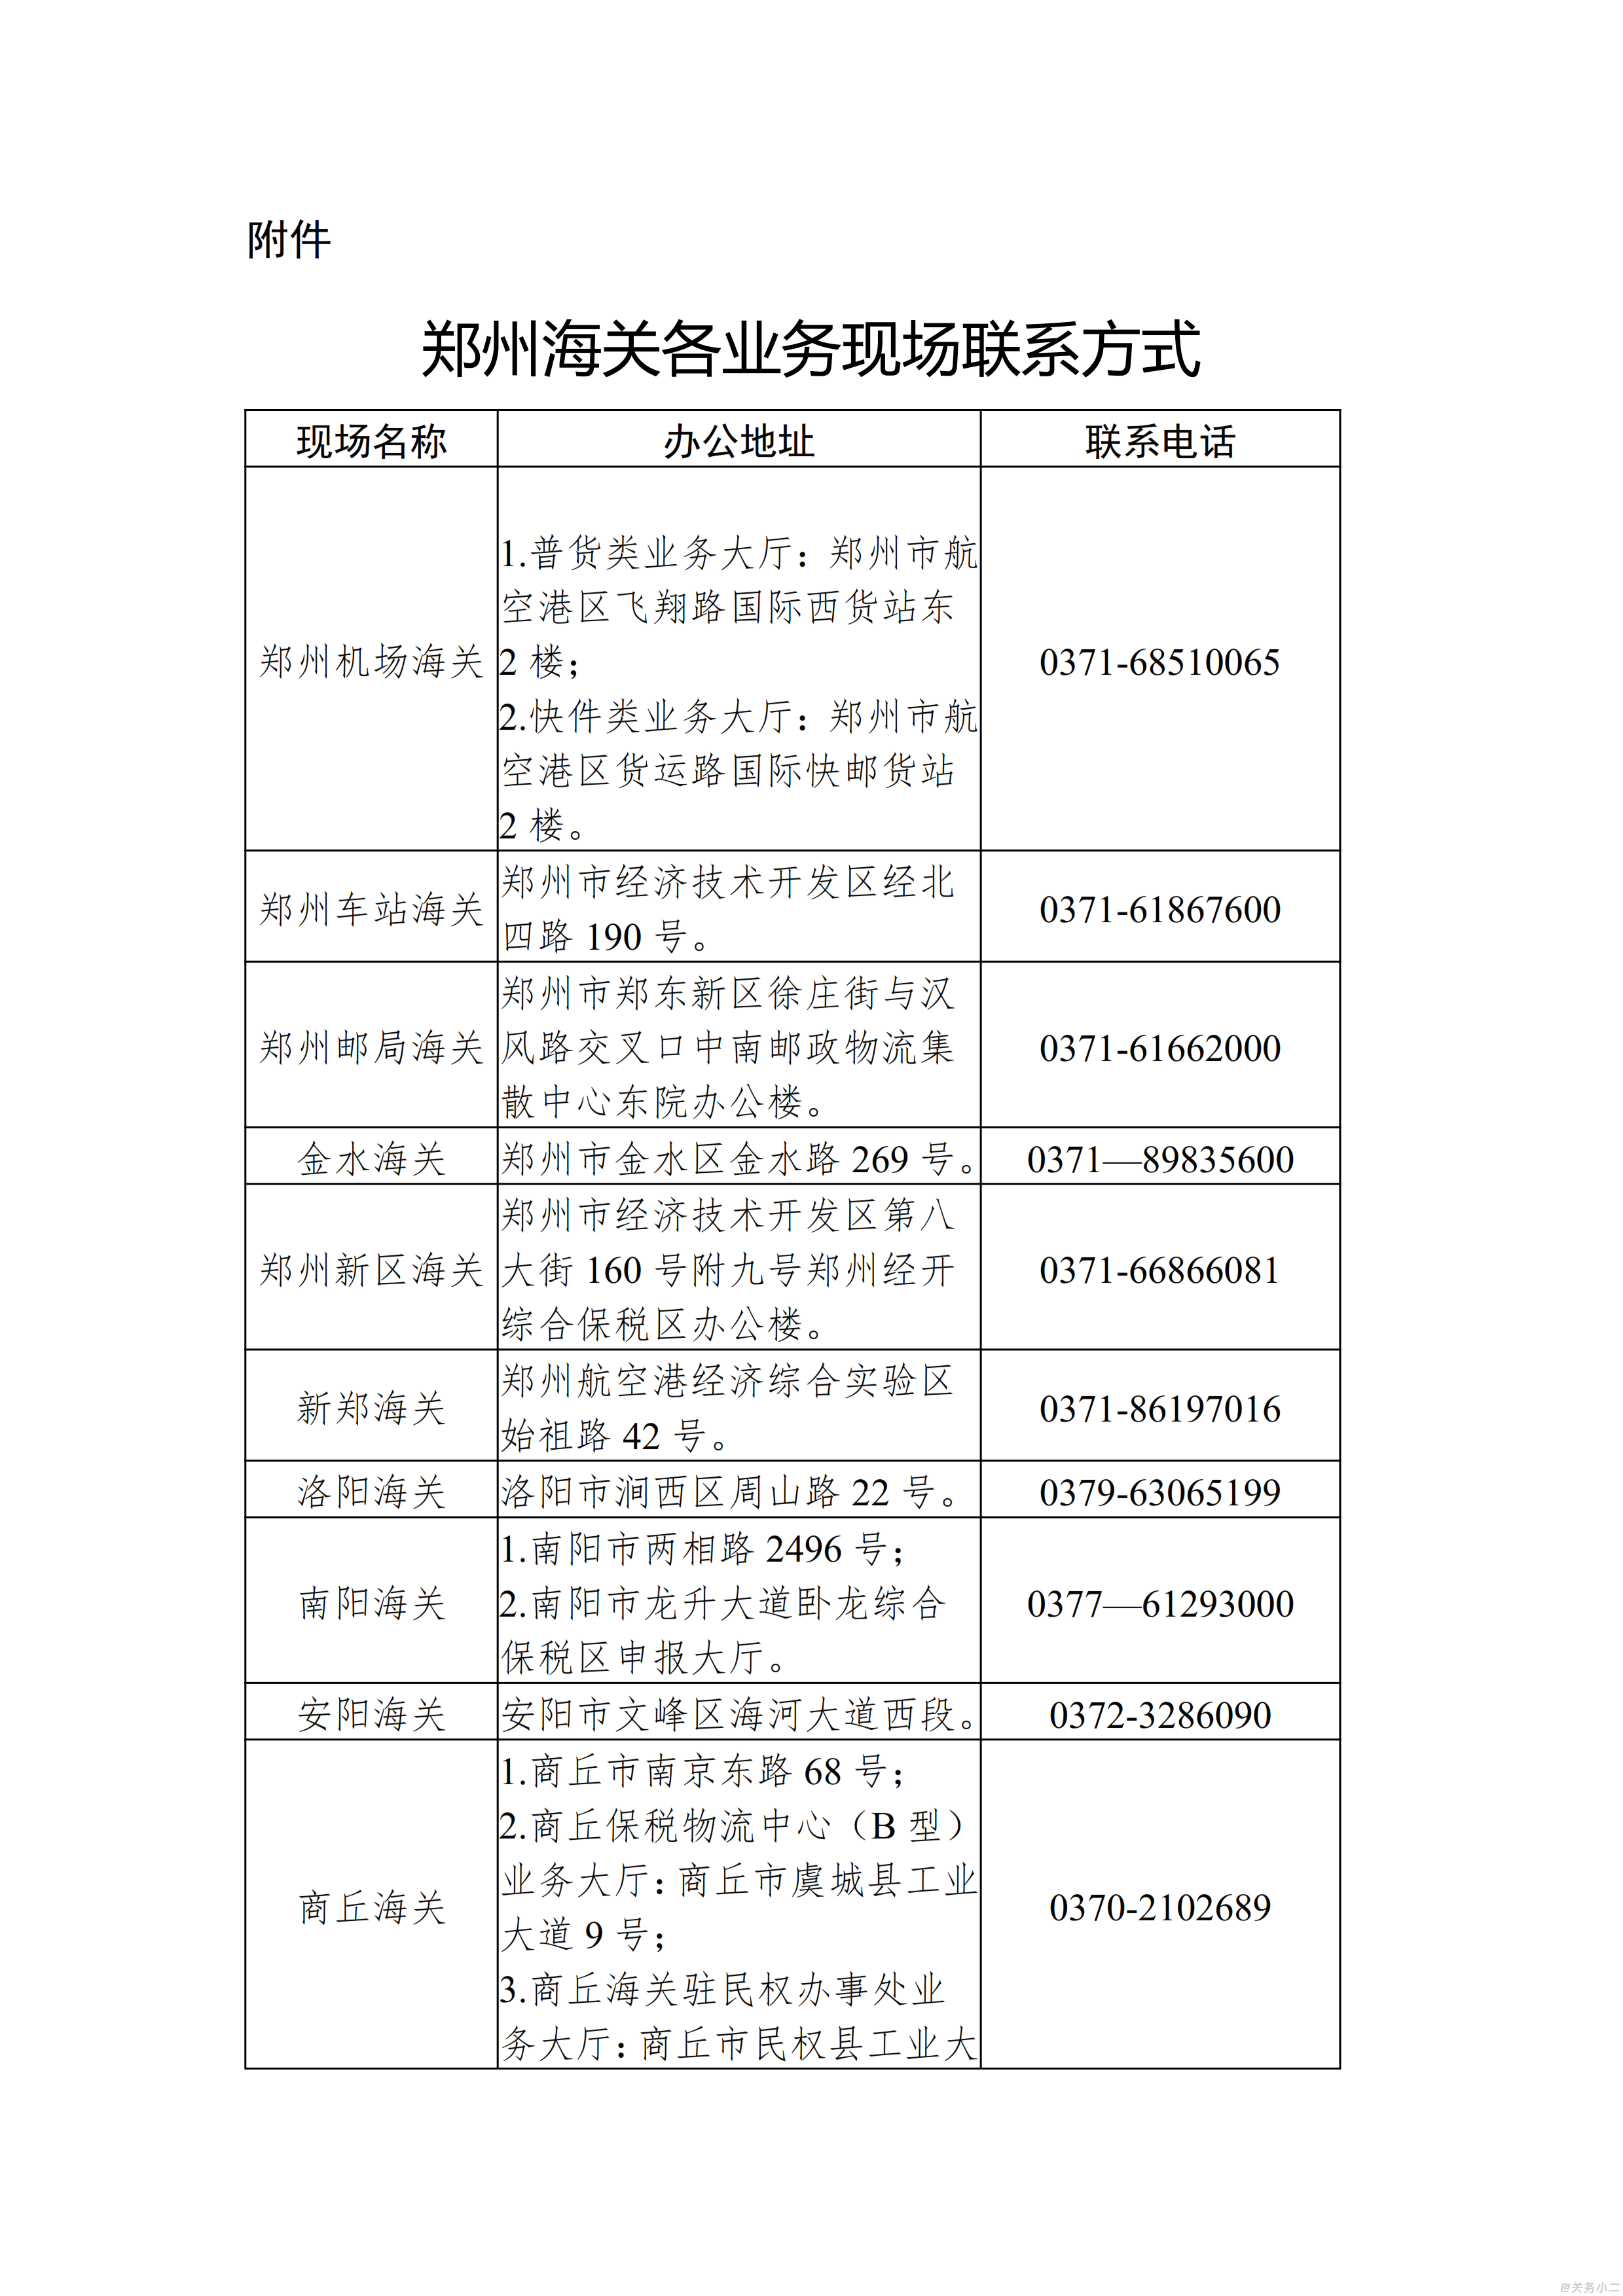 郑州海关各业务现场办公地址及联系方式_001.png